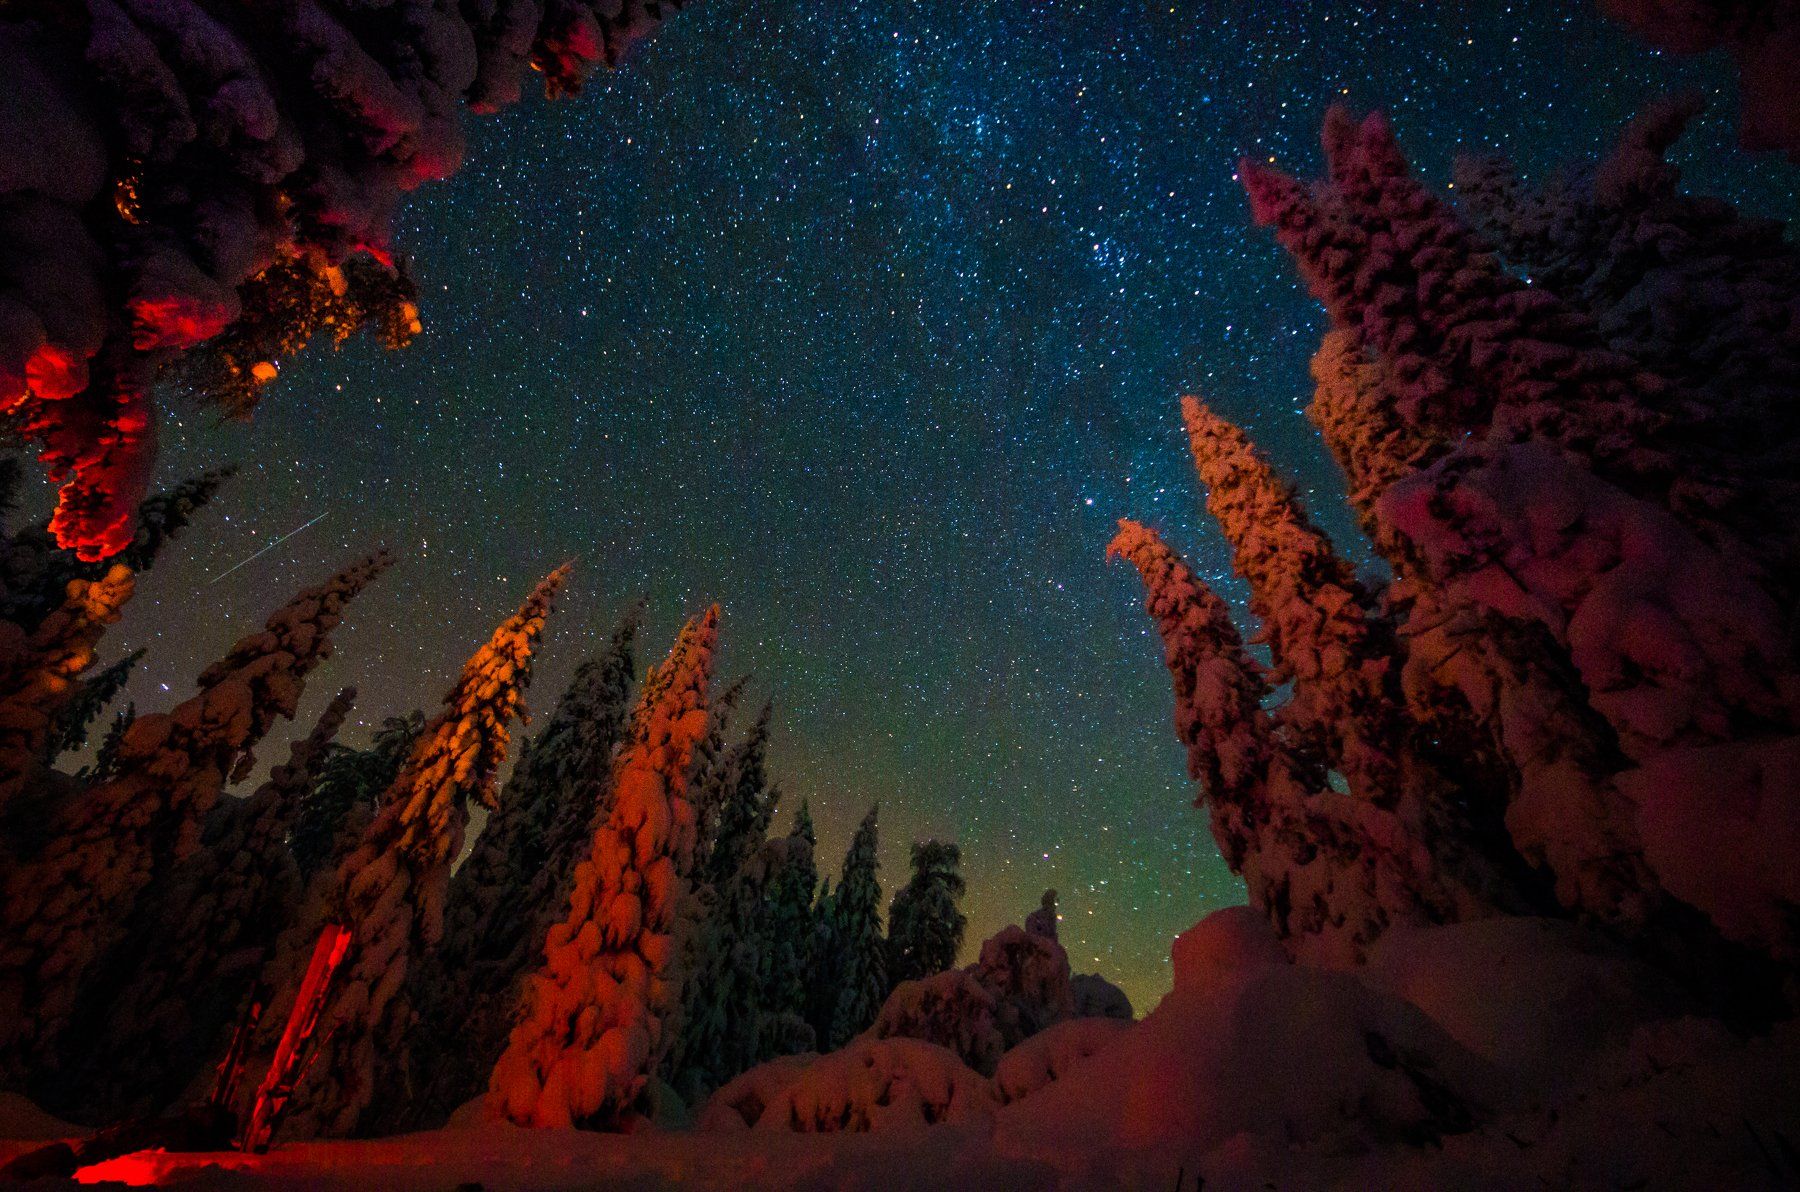 снег, зима, ночь, небо, звёзды, урал, южный урал, костёр, Evgeniy Khilkevitch